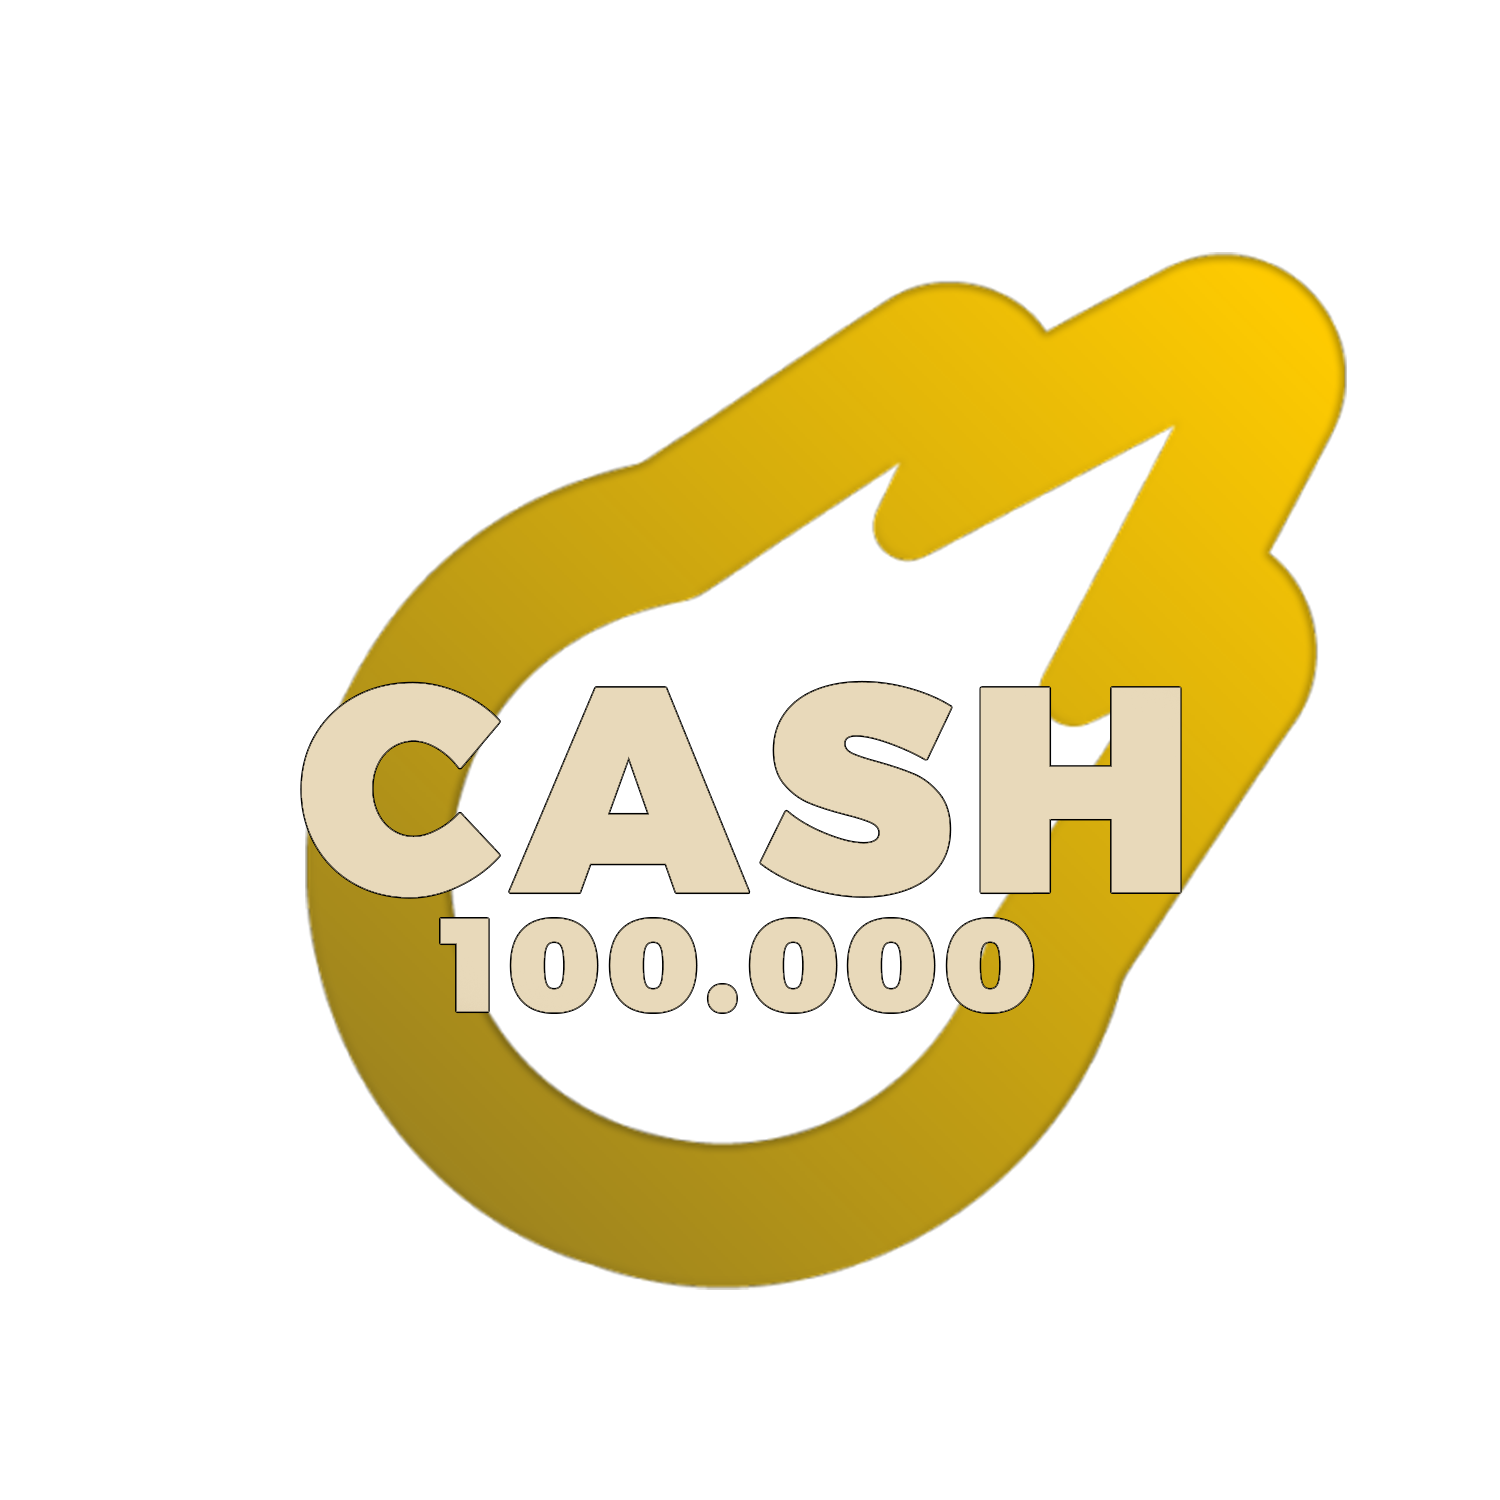 100.000 de Cash